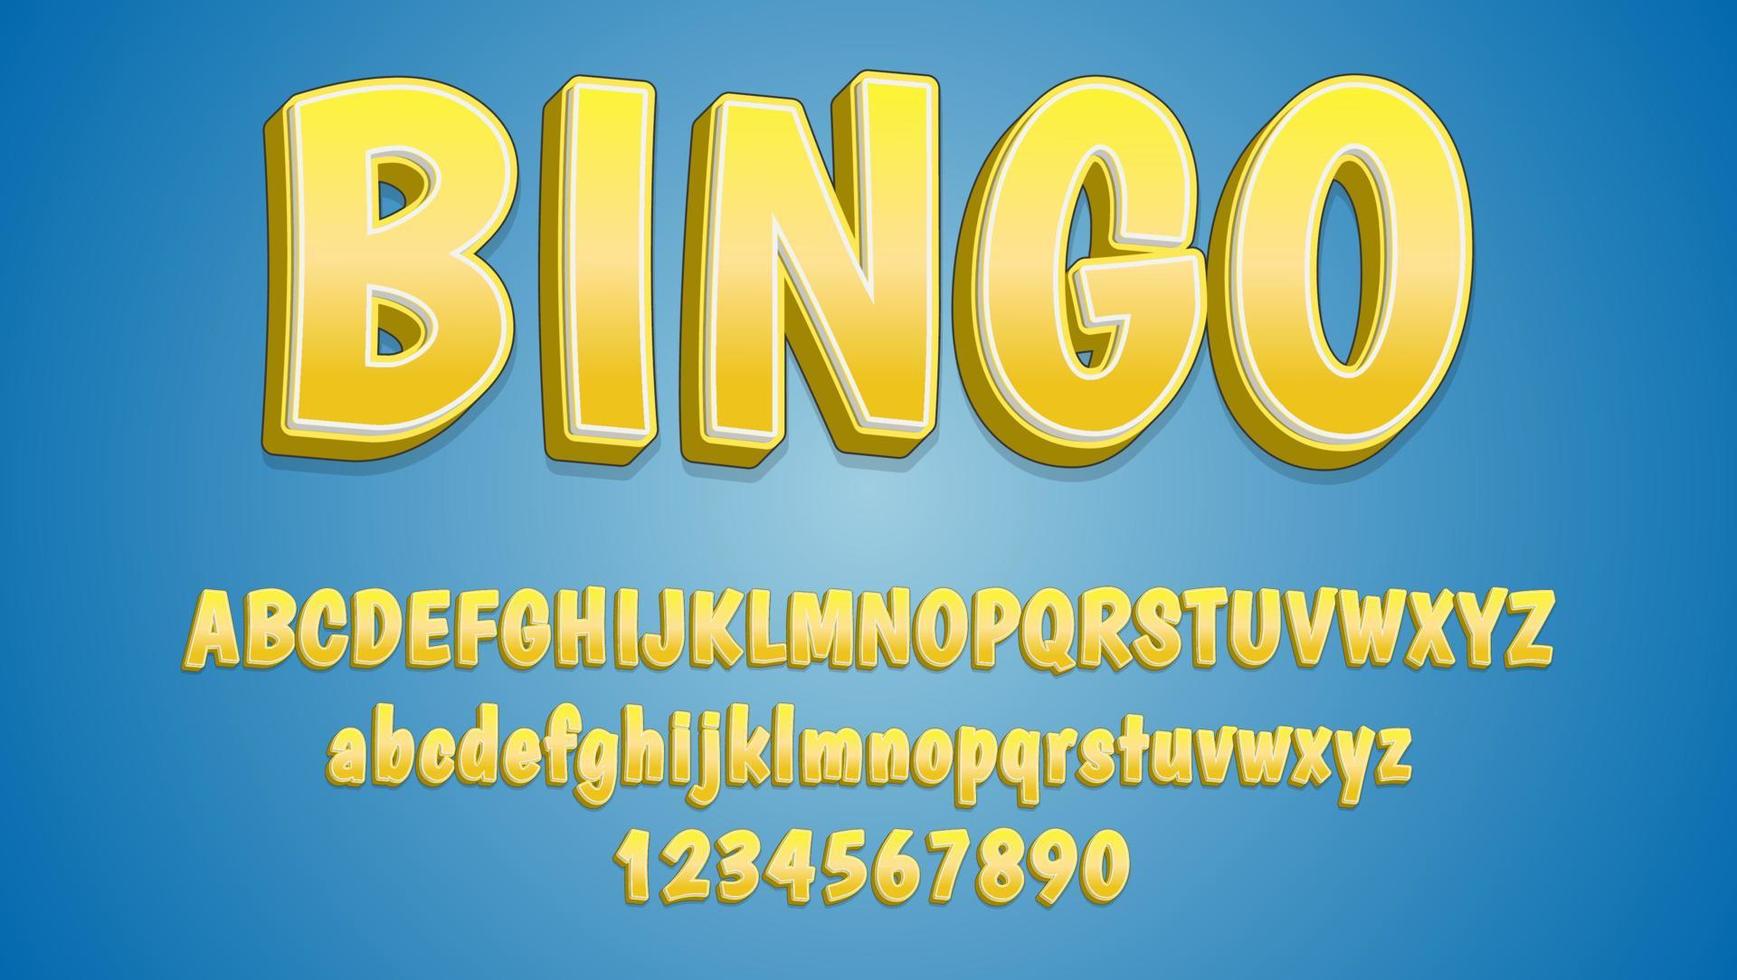 3d sfumatura gialla parola bingo modello di progettazione effetto testo completamente modificabile vettore